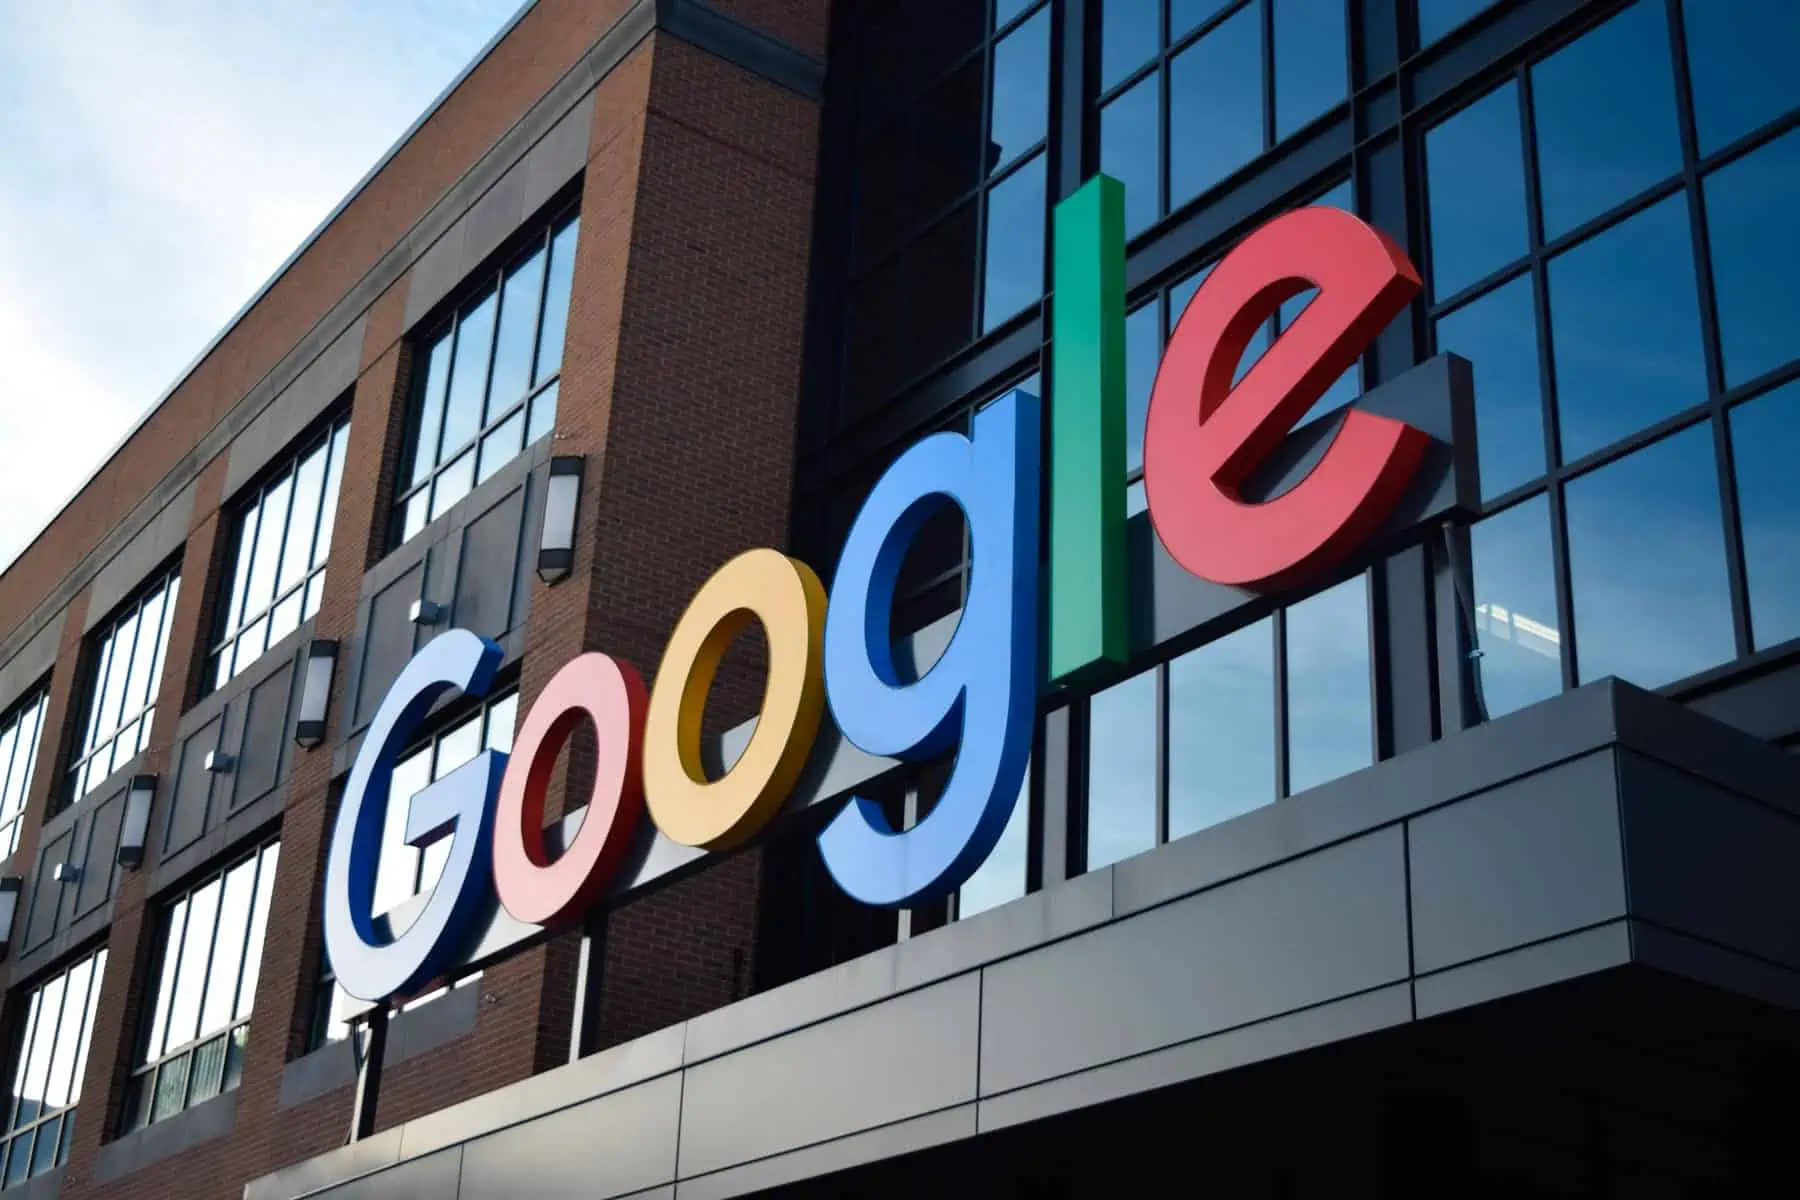 Google Informa Cierre de Cuentas Inutilizadas